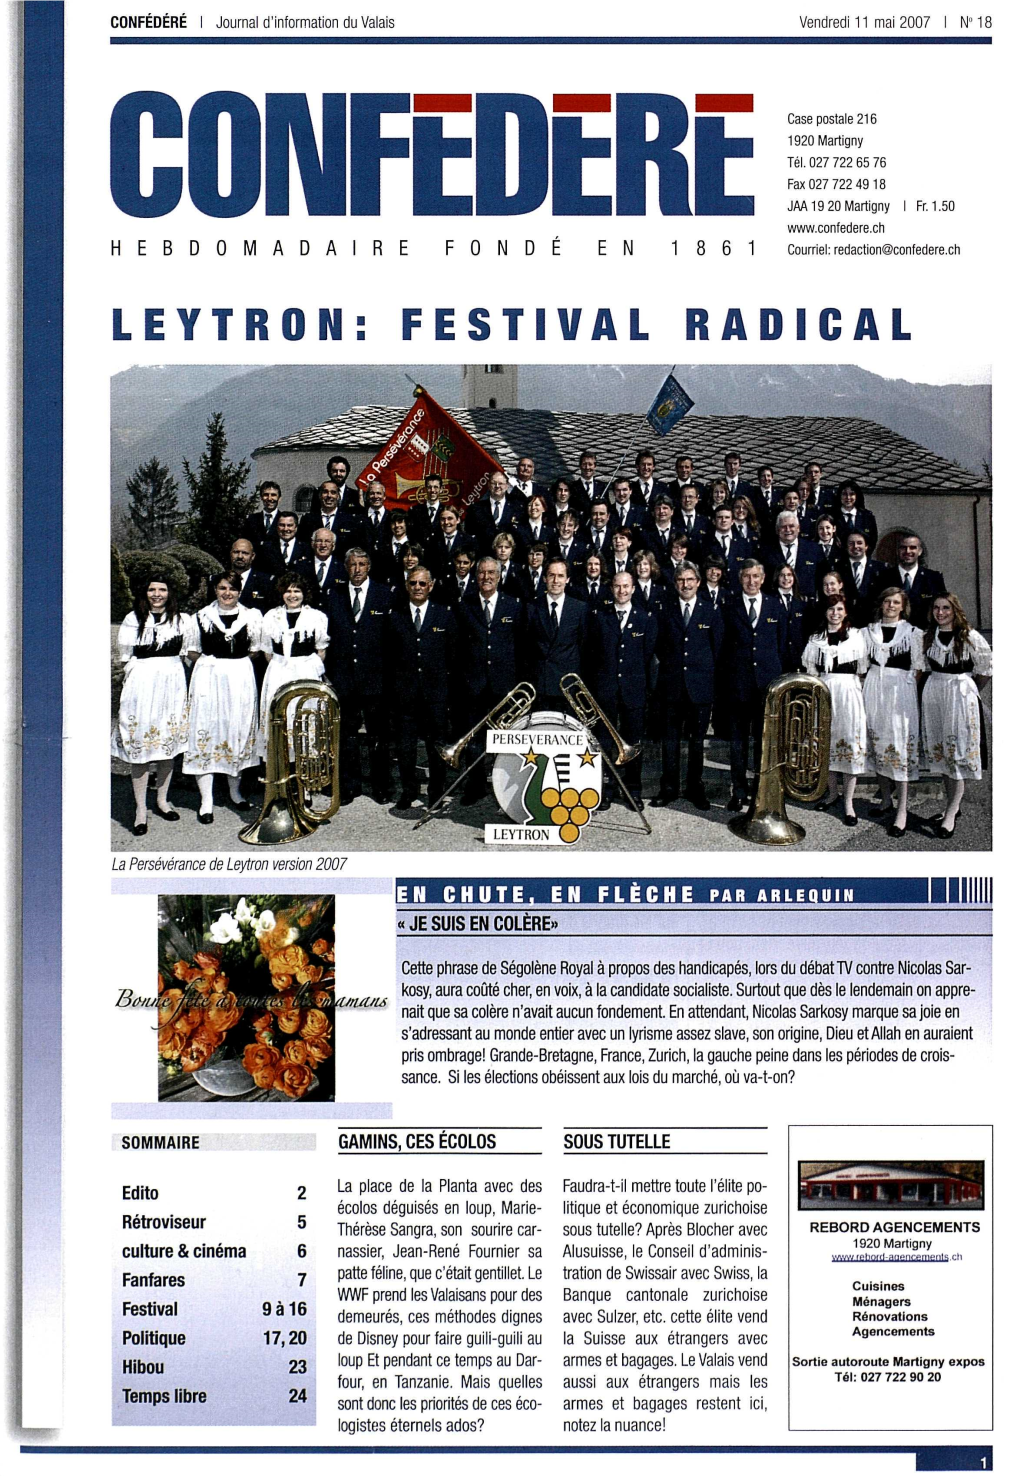 Leytron: Festival Radical